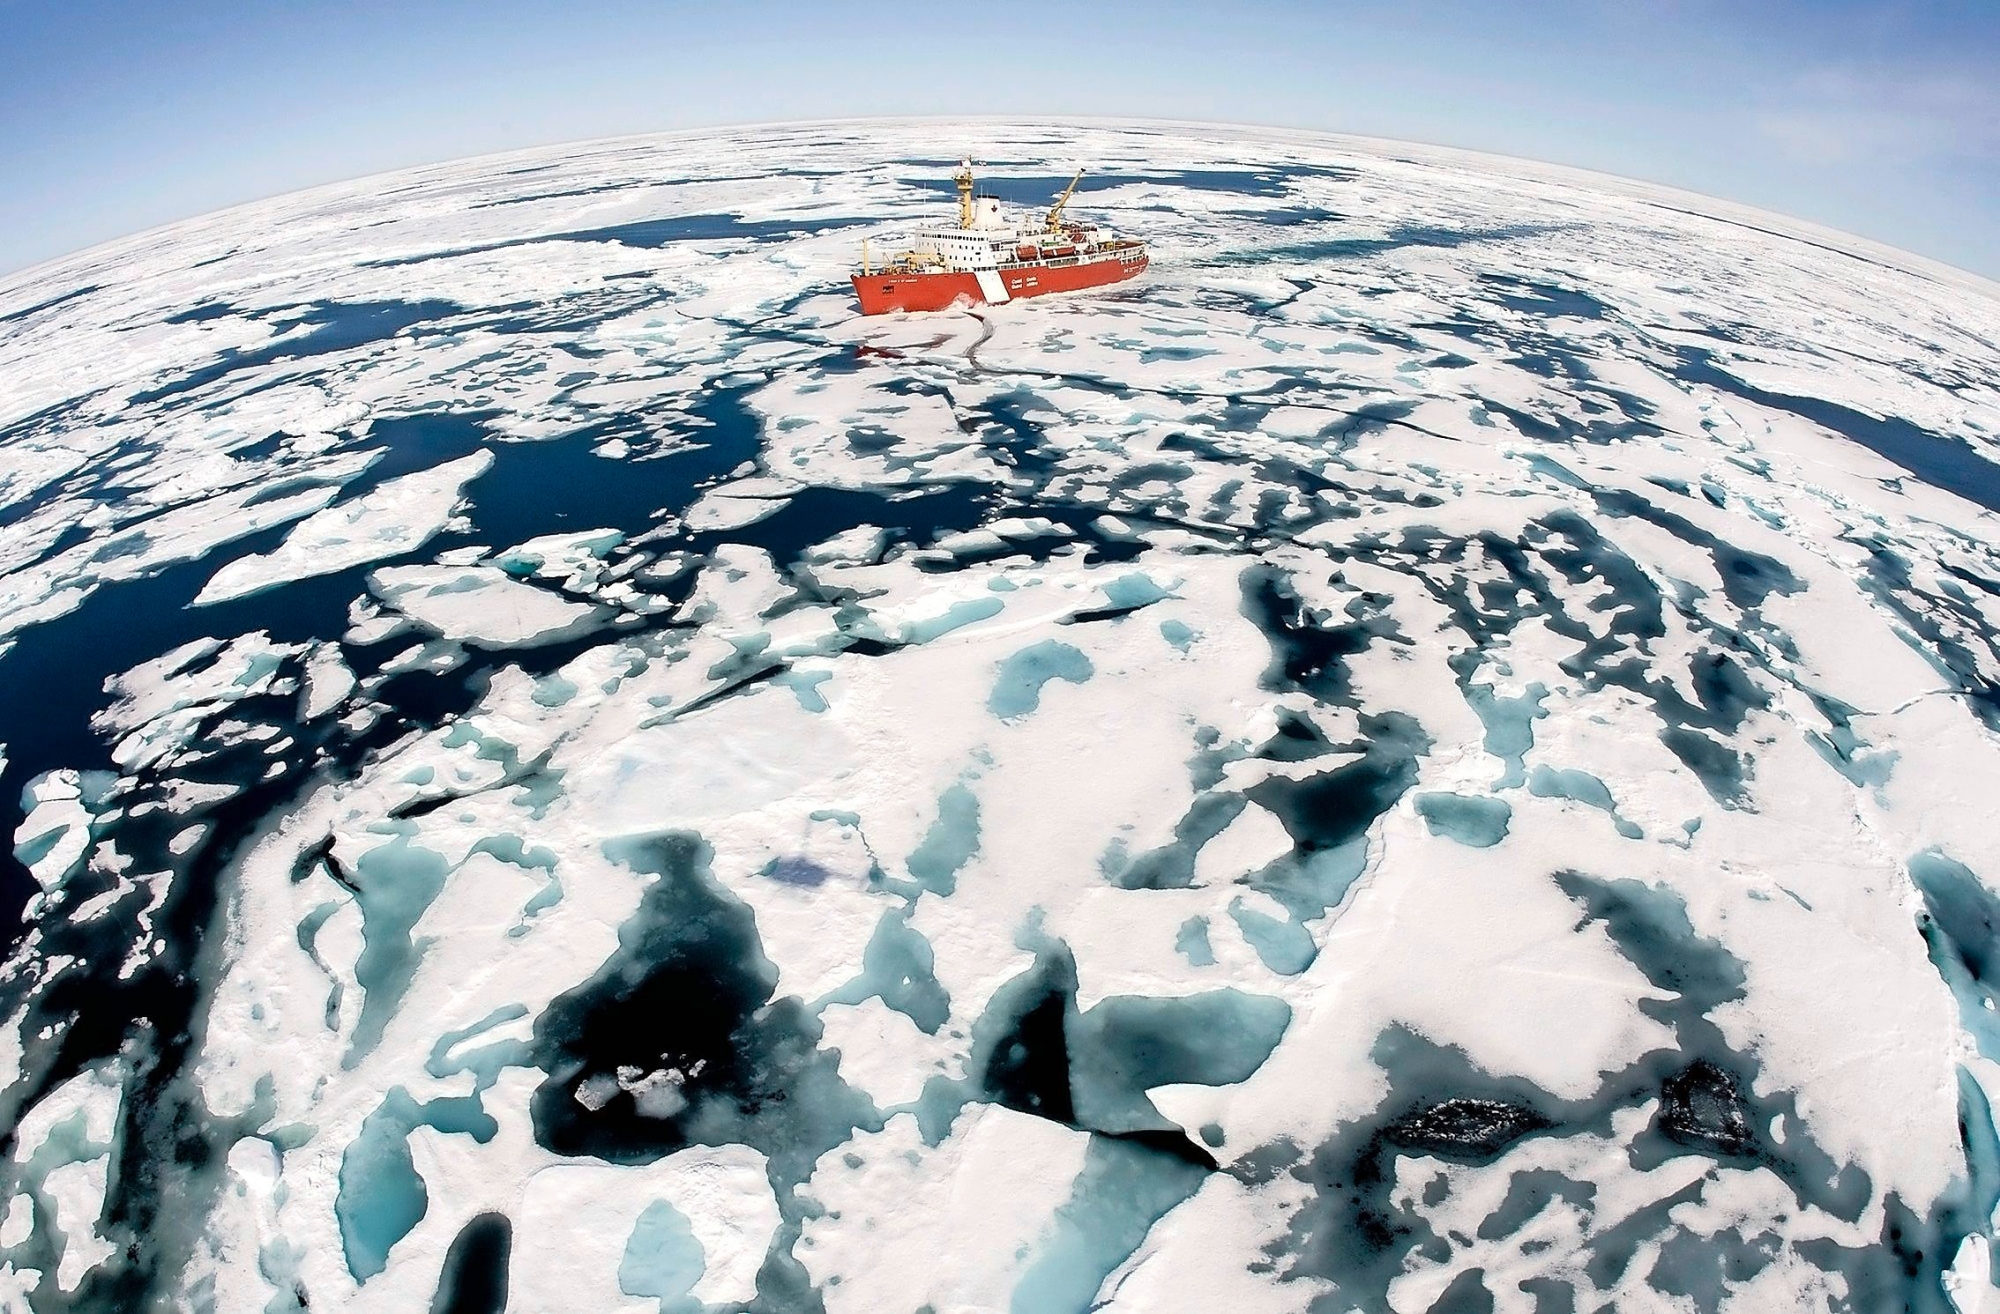 ** ARCHIV ** Der Eisbrecher 'Louis S. St-Laurent' von der kanadischen Kuestenwache bahnt sich am 10. Juli 2008 seinen Weg durch das Eis in der Baffin Bay, Kanada. Der Klimawandel wirkt sich in der Arktis immer dramatischer aus. Wie aus dem dritten Arktisbericht von 46 Wissenschaftlern aus zehn Laendern hervorgeht, liegen die Temperaturen zurzeit um fuenf Grad ueber dem Normalwert und damit so hoch wie nie zuvor im Herbst. 2007 war demnach das waermste Jahr seit Beginn der Aufzeichnungen in der Region. Die Schmelze der Eisberge erreichte im vergangenen Jahr einen Rekordwert. (AP Photo/The Canadian Press, Jonathan Hayward) ** FILE **  The Canadian Coast Guard icebreaker Louis S. St-Laurent makes its way through the ice in Baffin Bay, Canada on Thursday, July 10, 2008.  The Louis S. St-Laurent is on its annual voyage through Canada's Arctic that includes patrols through the Northwest Passage. (KEYSTONE/AP Photo/The Canadian Press, Jonathan Hayward) USA Klima Arktis